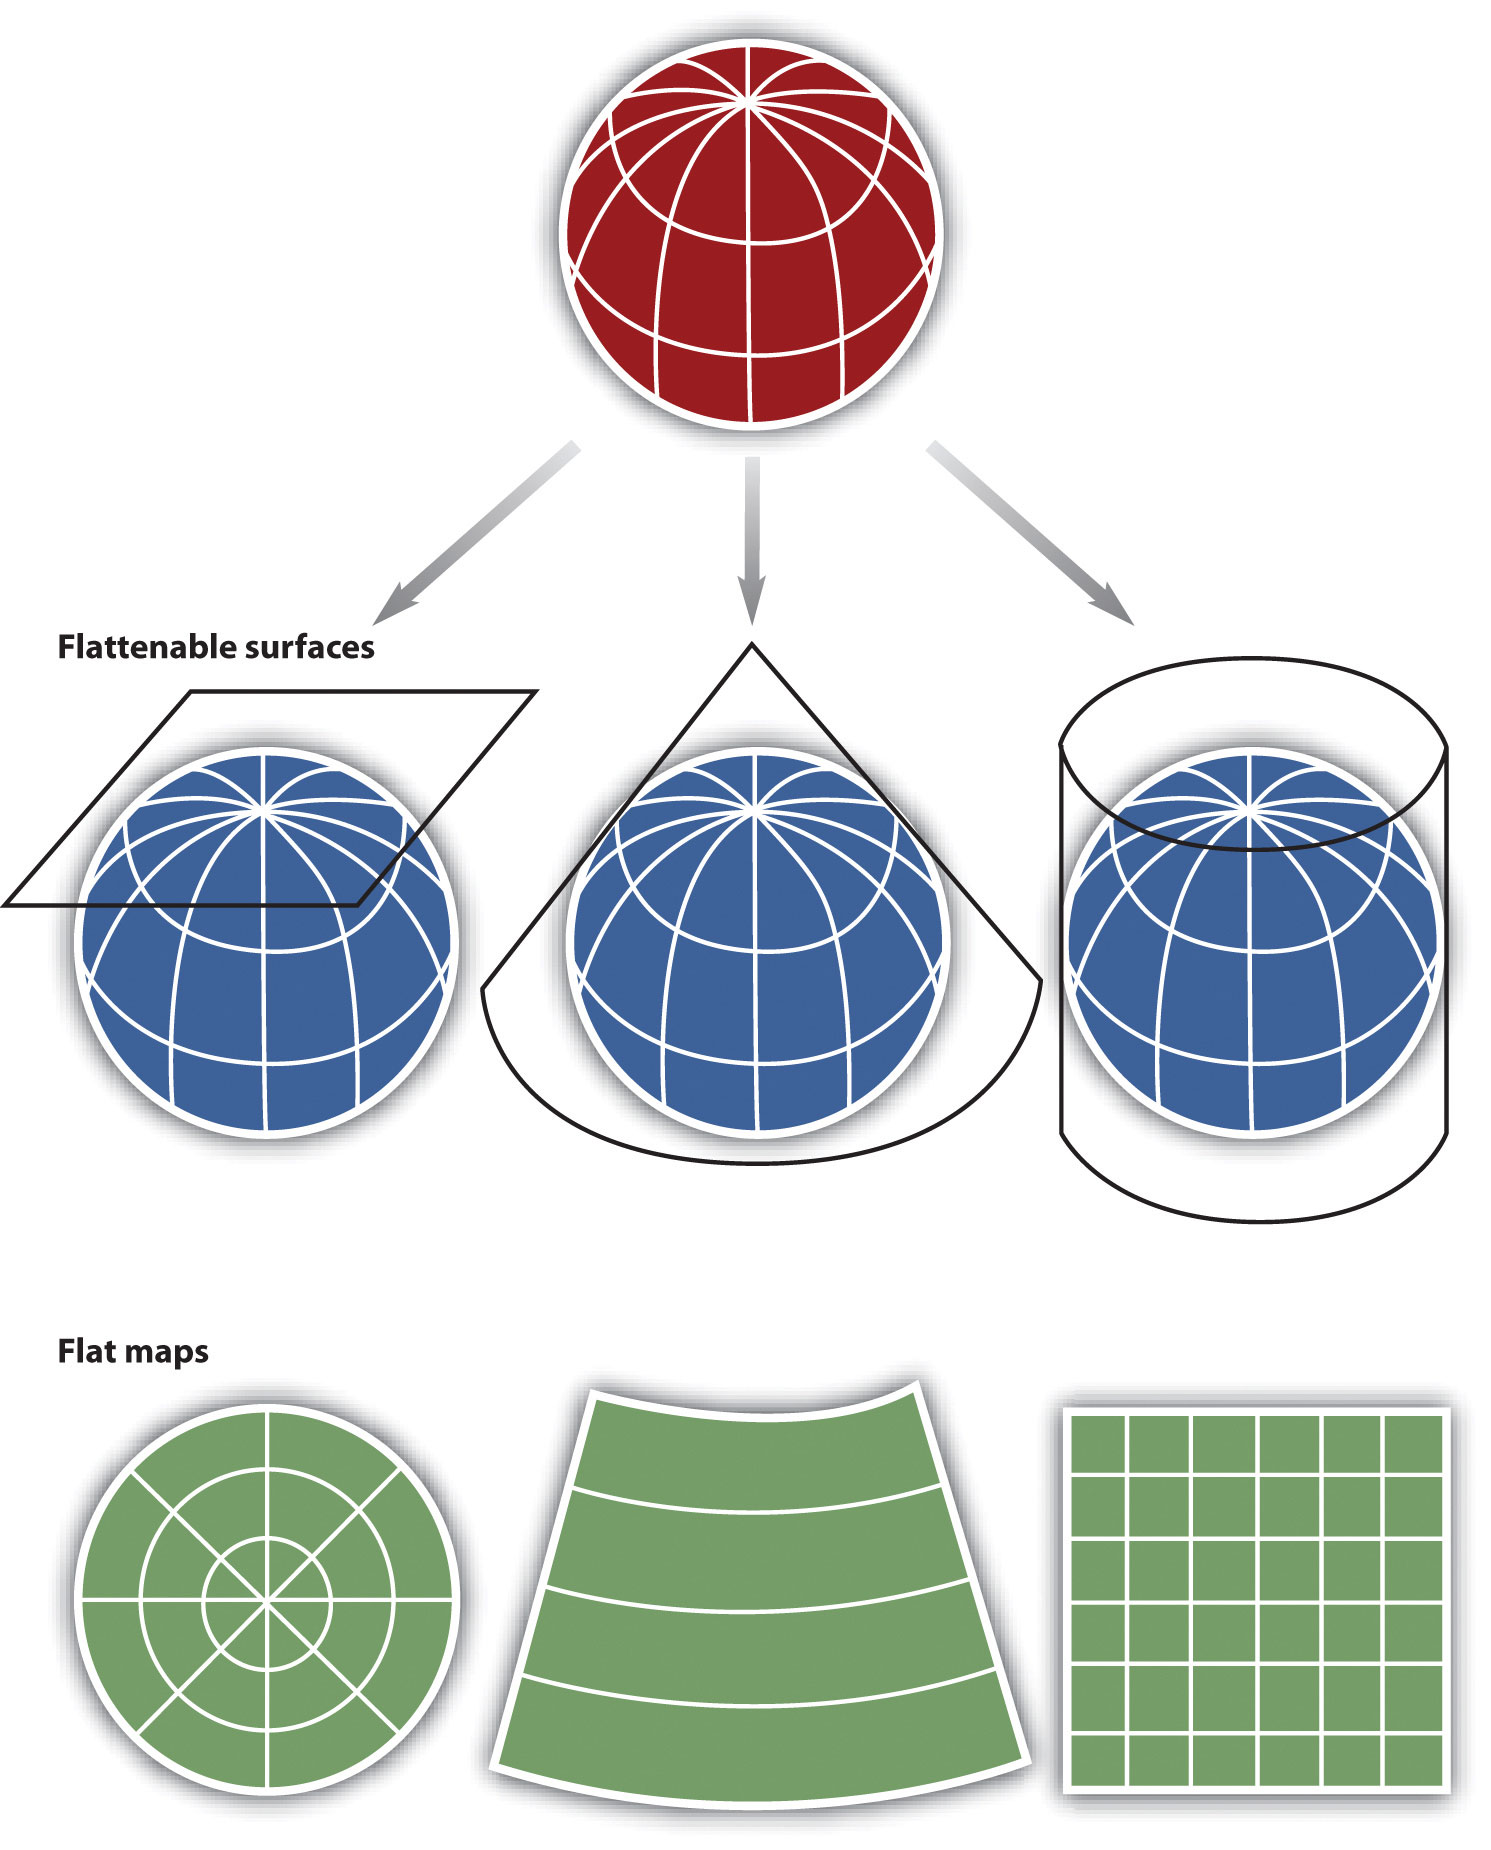 Sistema de Referência de Coordenadas Projetadas, dividido em três grupos: plana, cônica e cilíndrica. Fonte: Geographic Information System Basics.